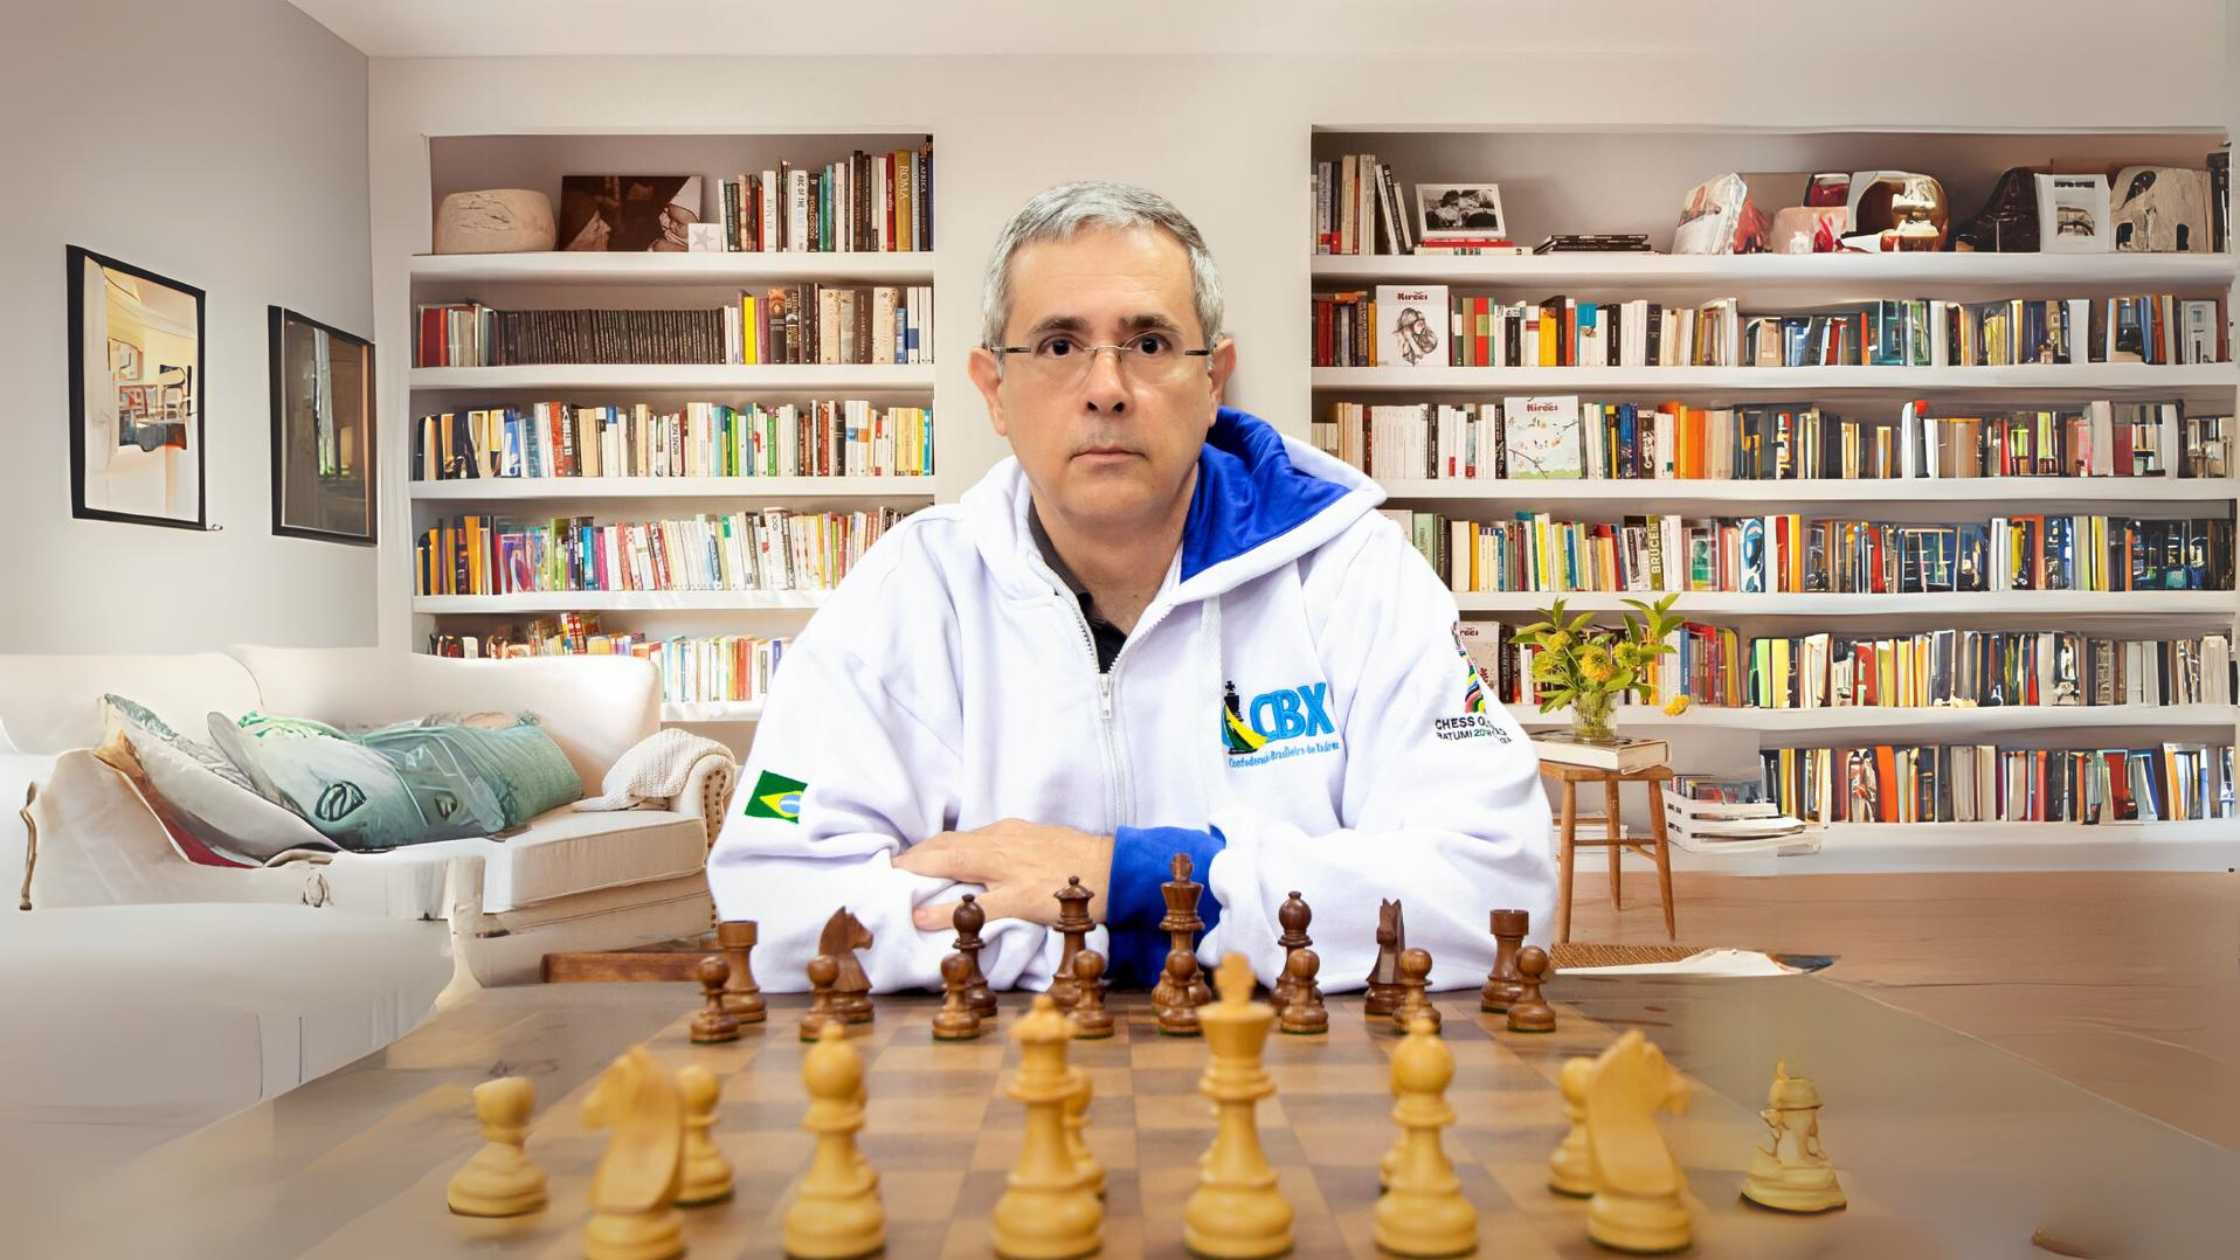 Olimpíadas de xadrez: Competidores das Olimpíadas de xadrez, Garry